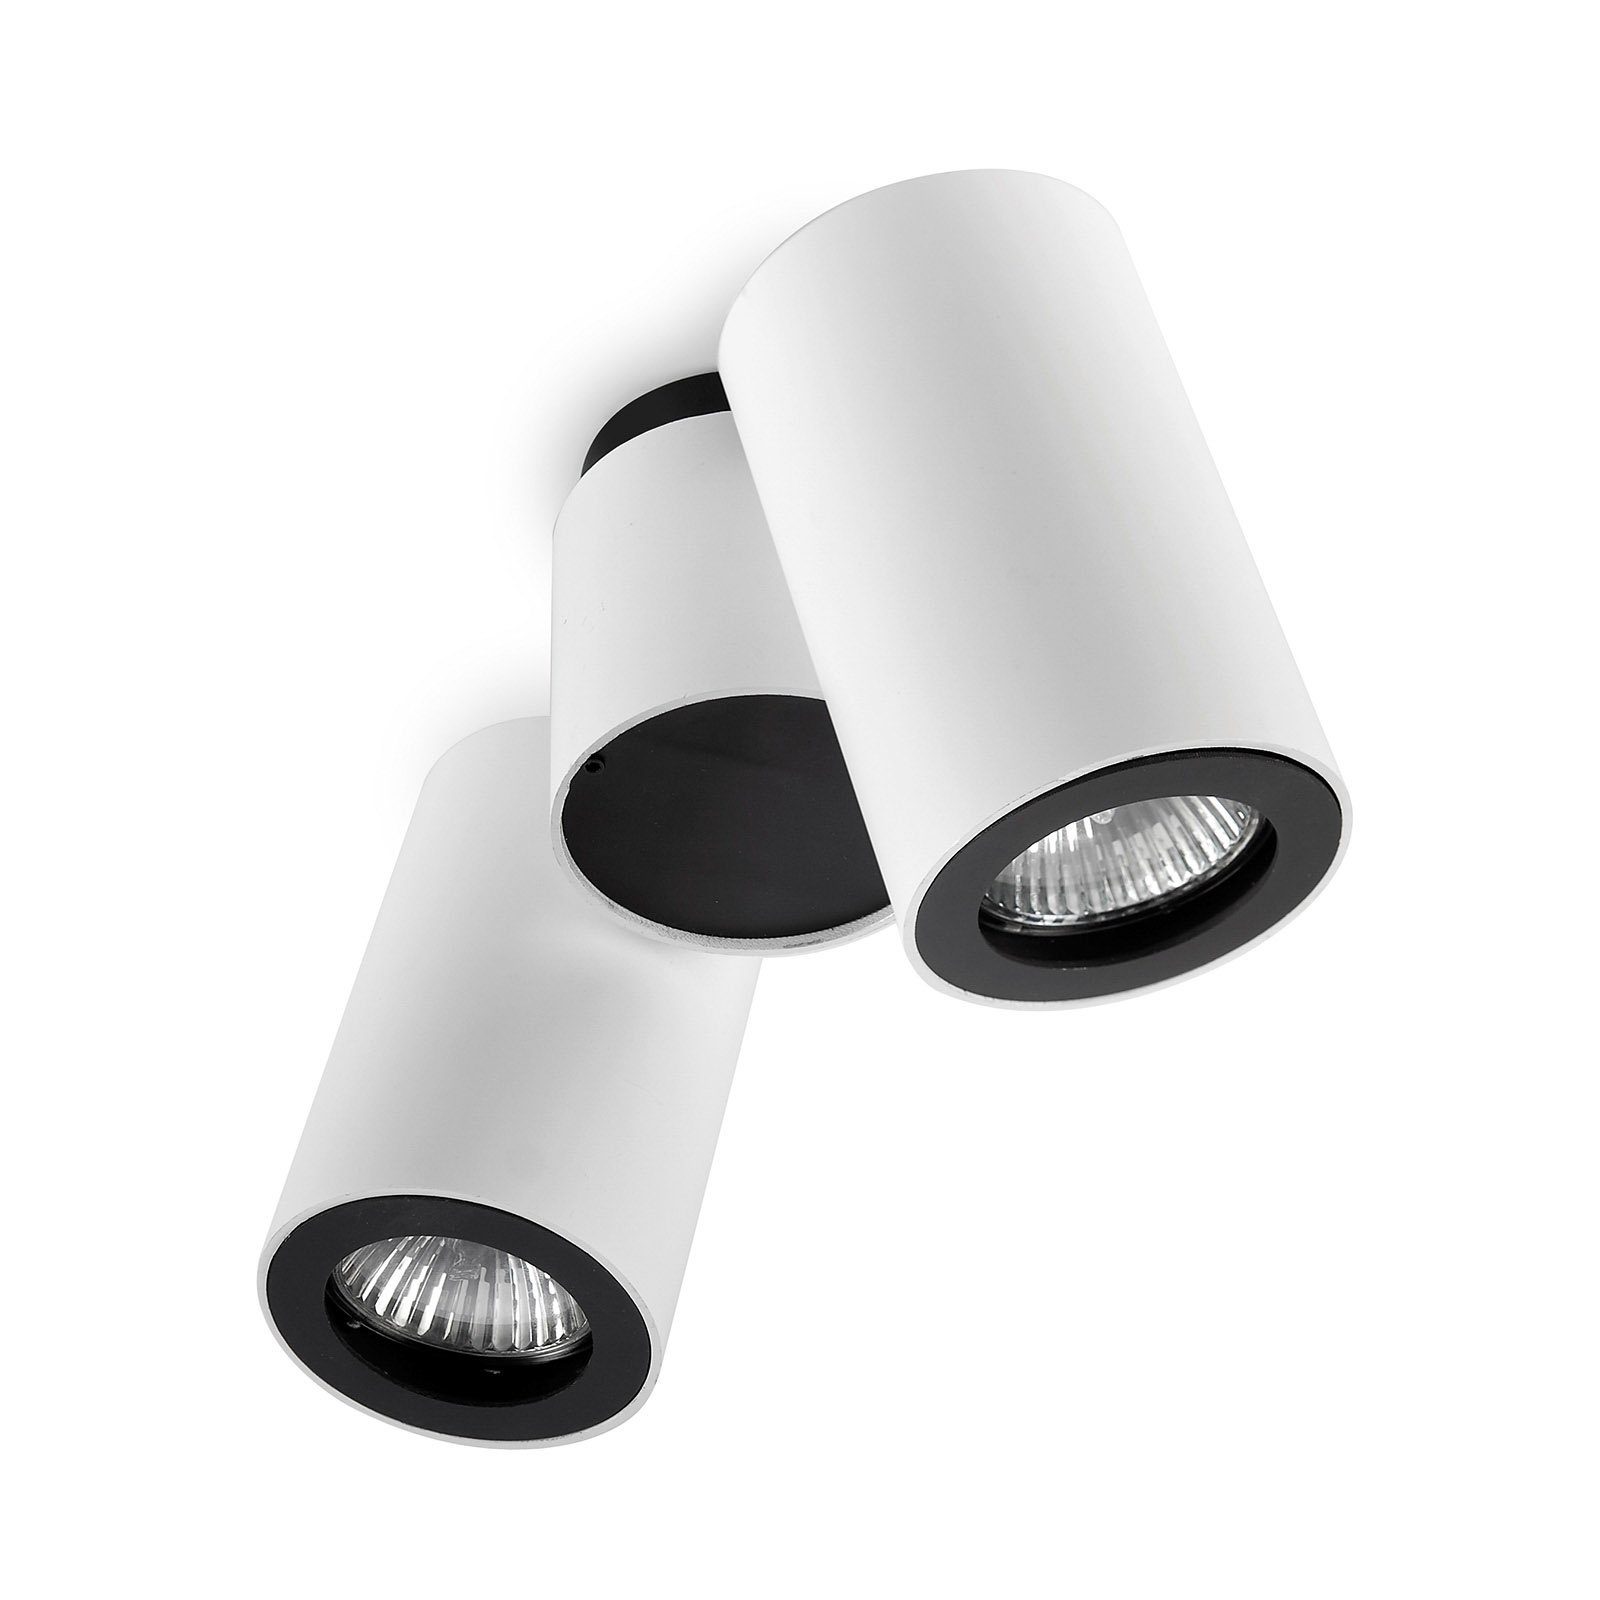 LEDS-C4 Pipe takspot 2 lampor vit-svart